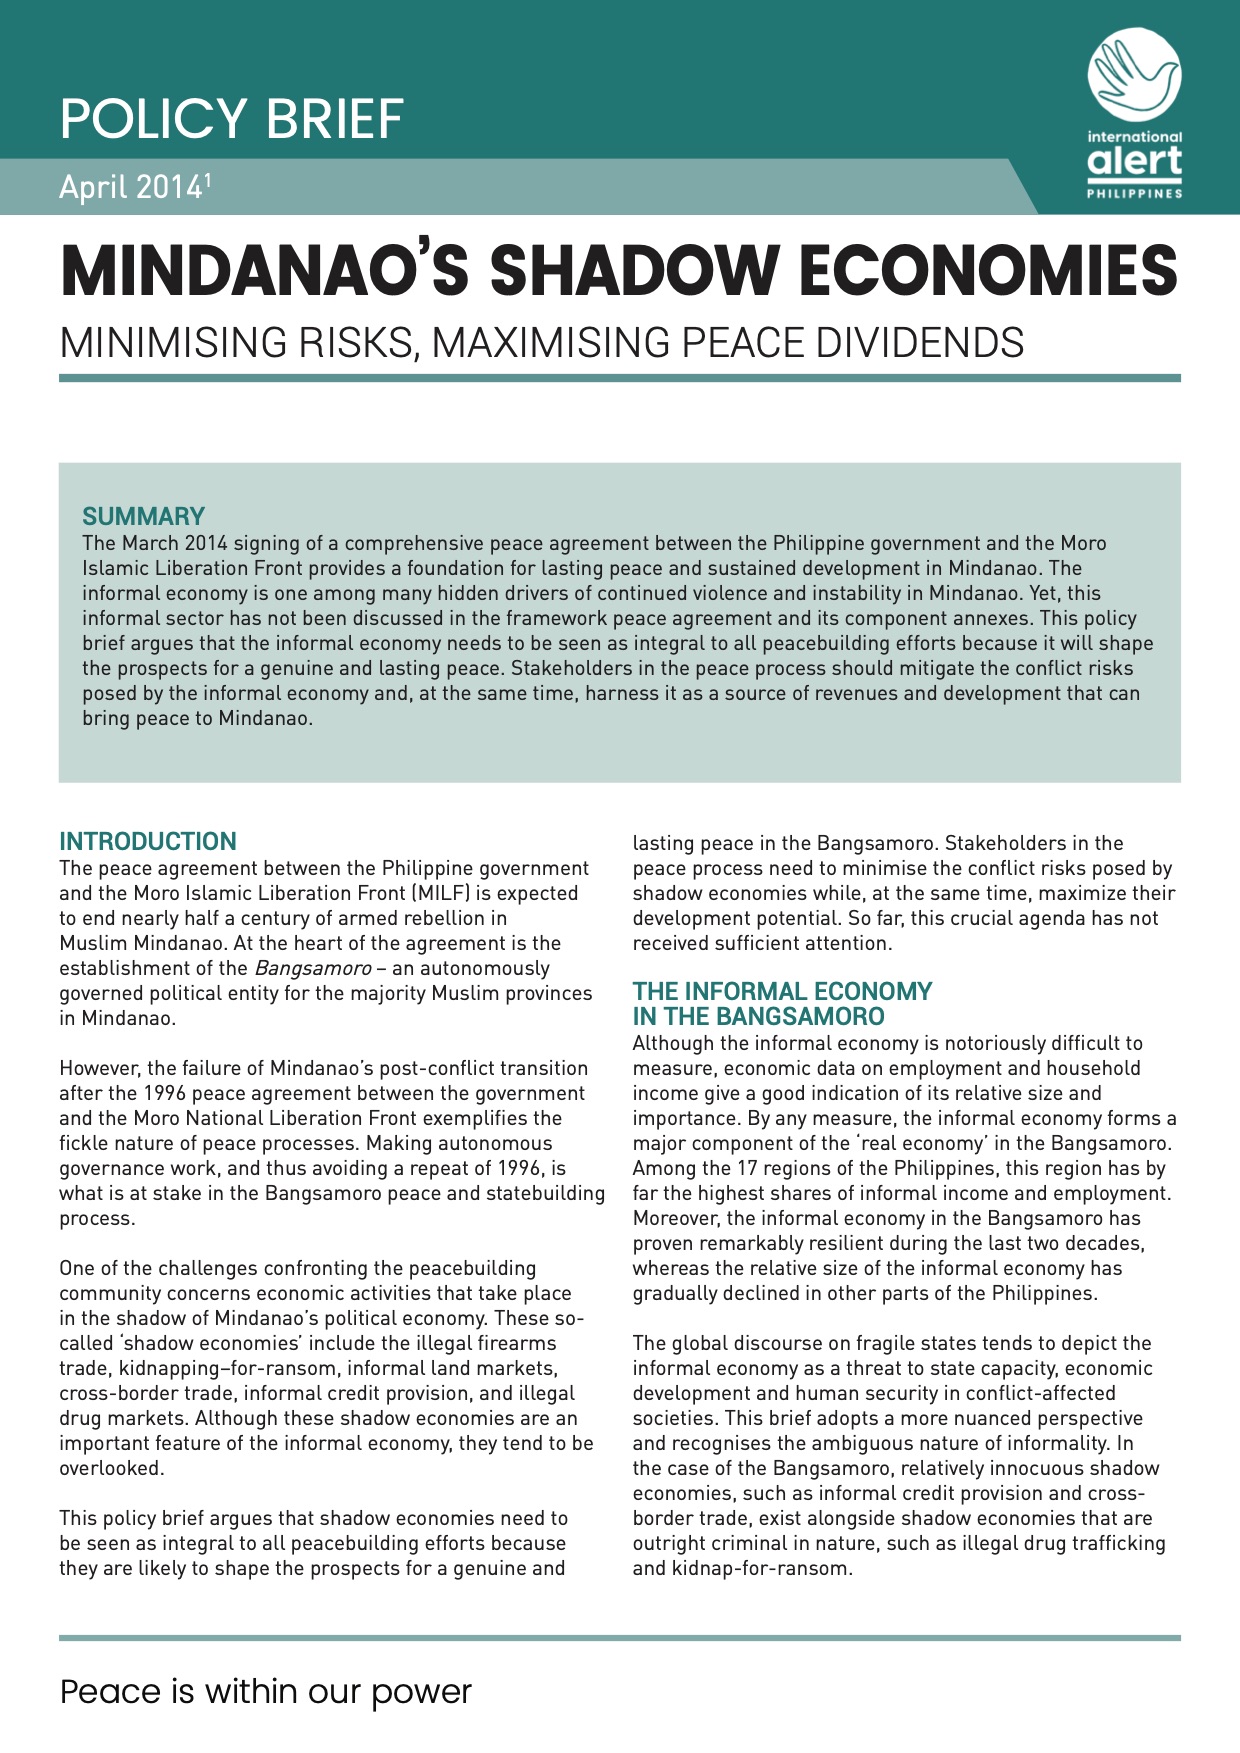 Mindanao’s Shadow Economies